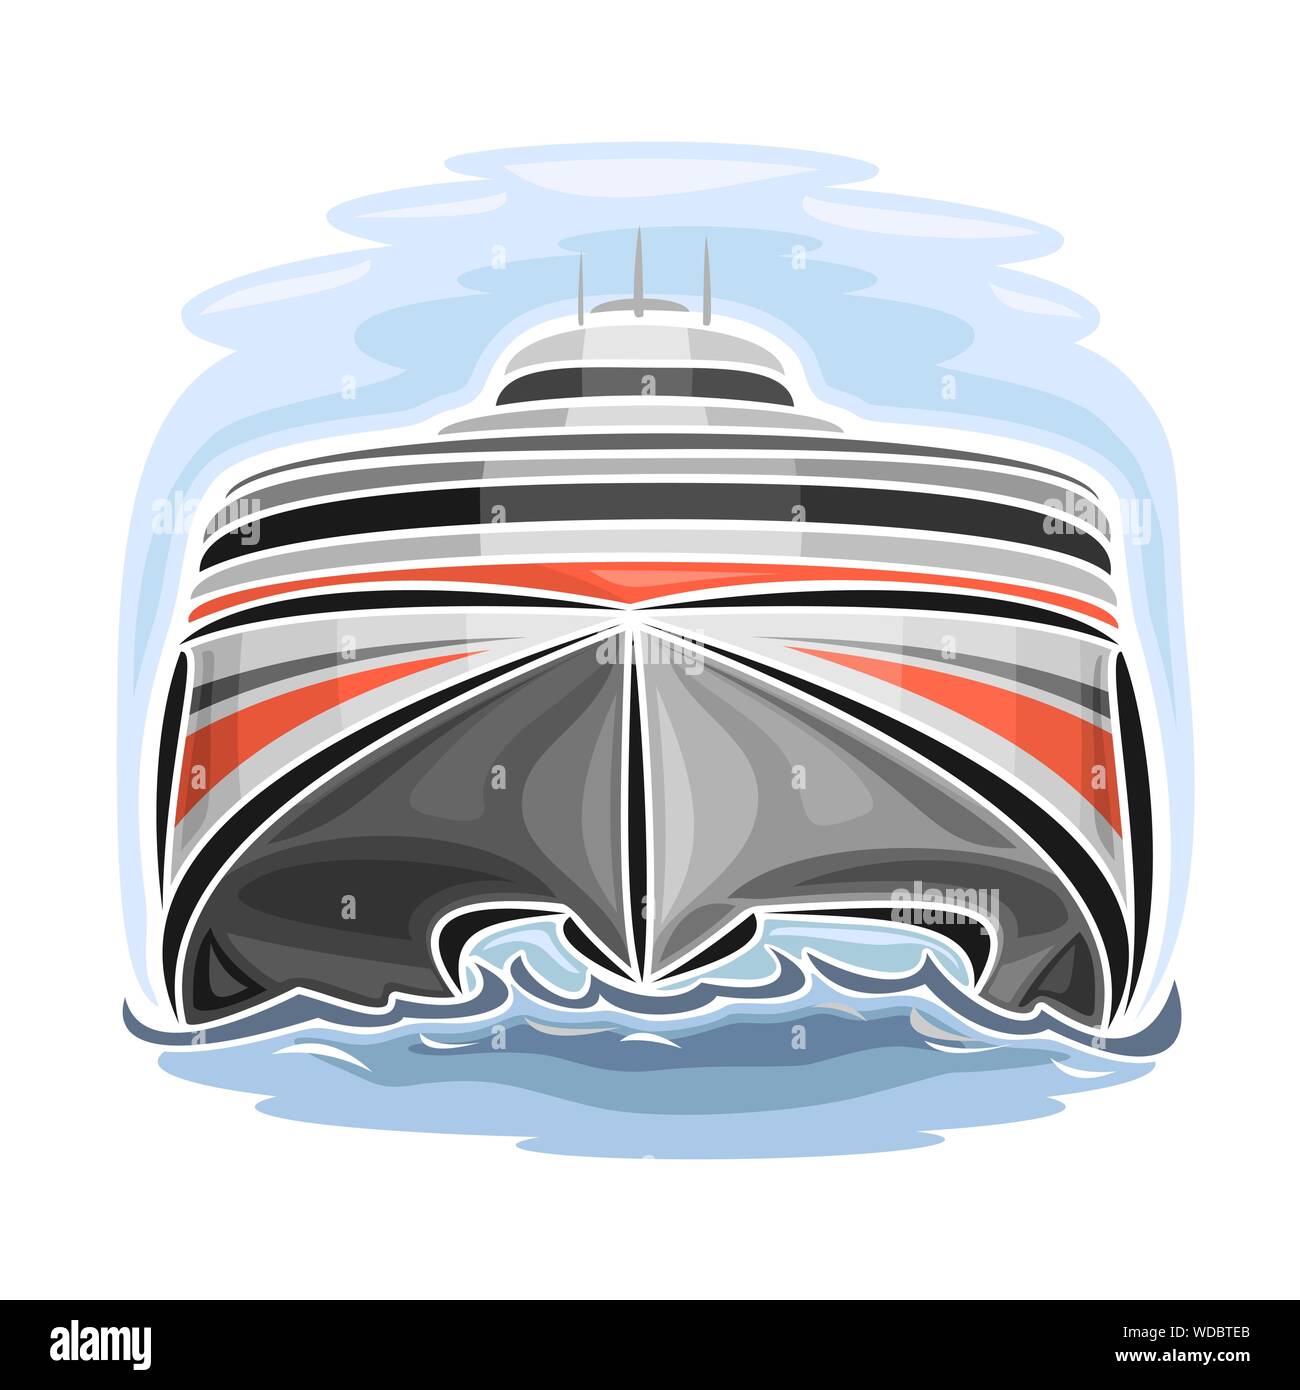 Illustrazione Vettoriale del logo per alta velocità-car ferry catamarano, vista frontale. Illustrazione Vettoriale